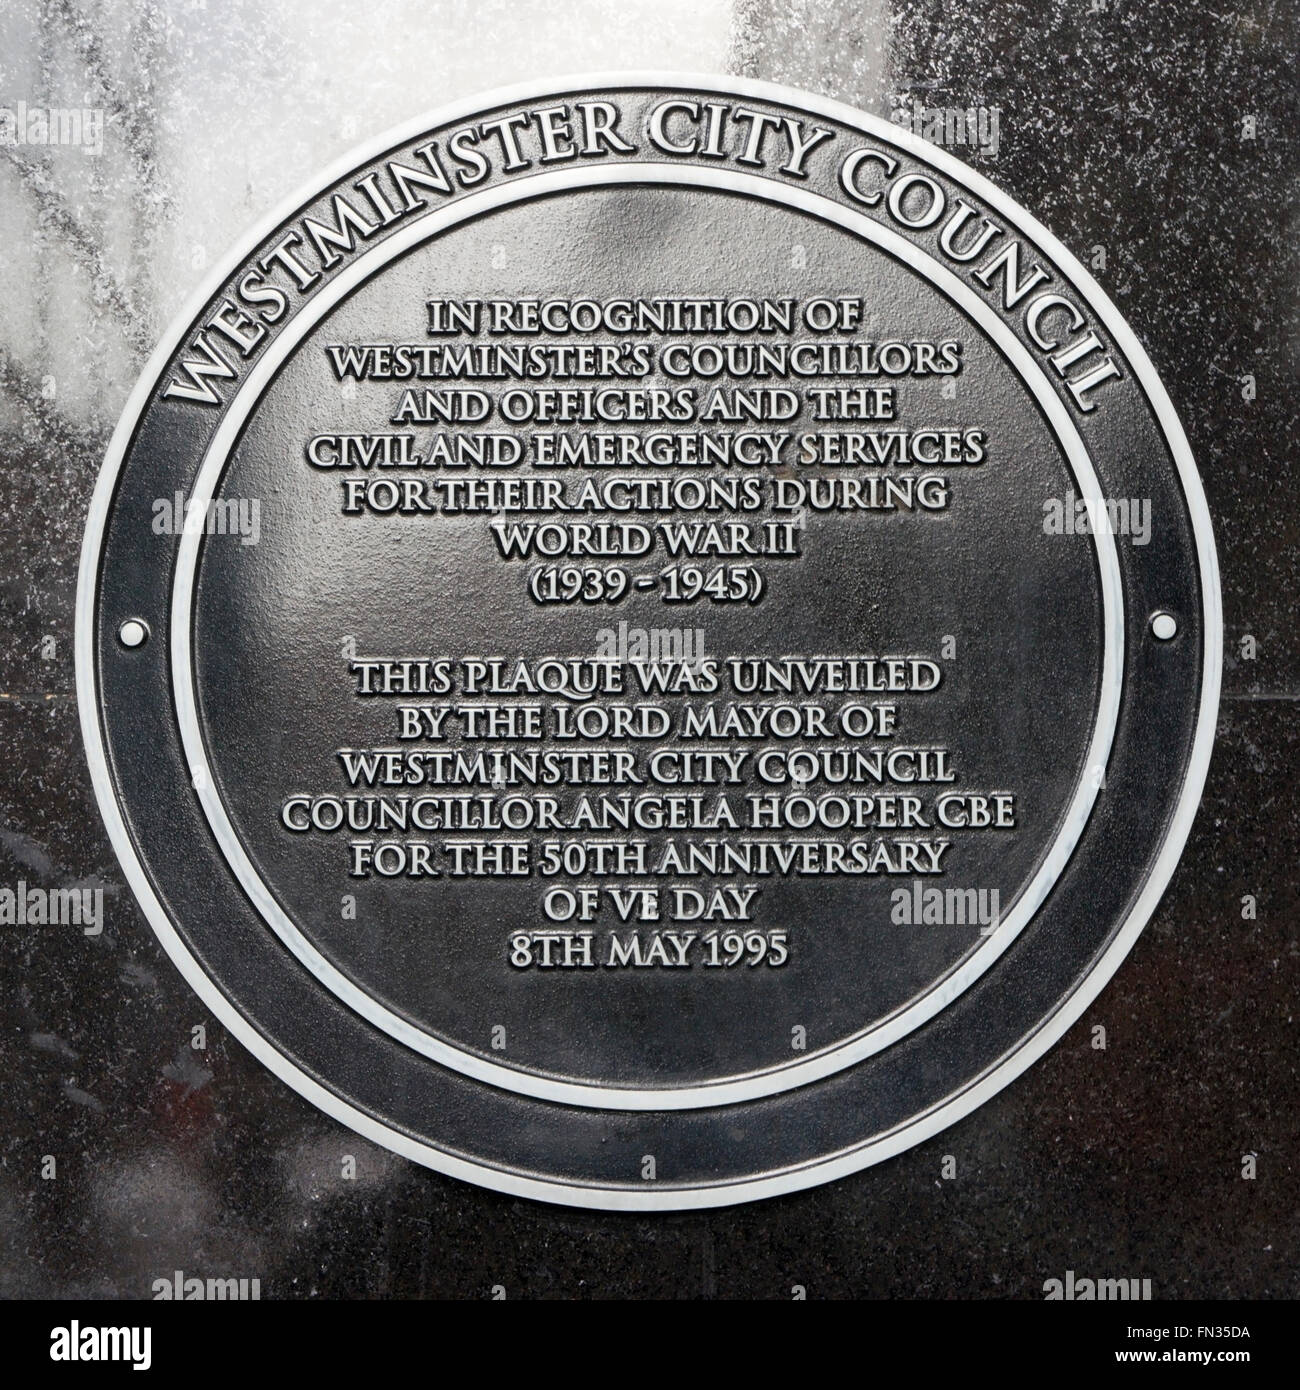 Placa en la ciudad de Westminster Hall conmemorando las acciones de personas relacionadas con el Consejo durante la segunda guerra mundial. Foto de stock